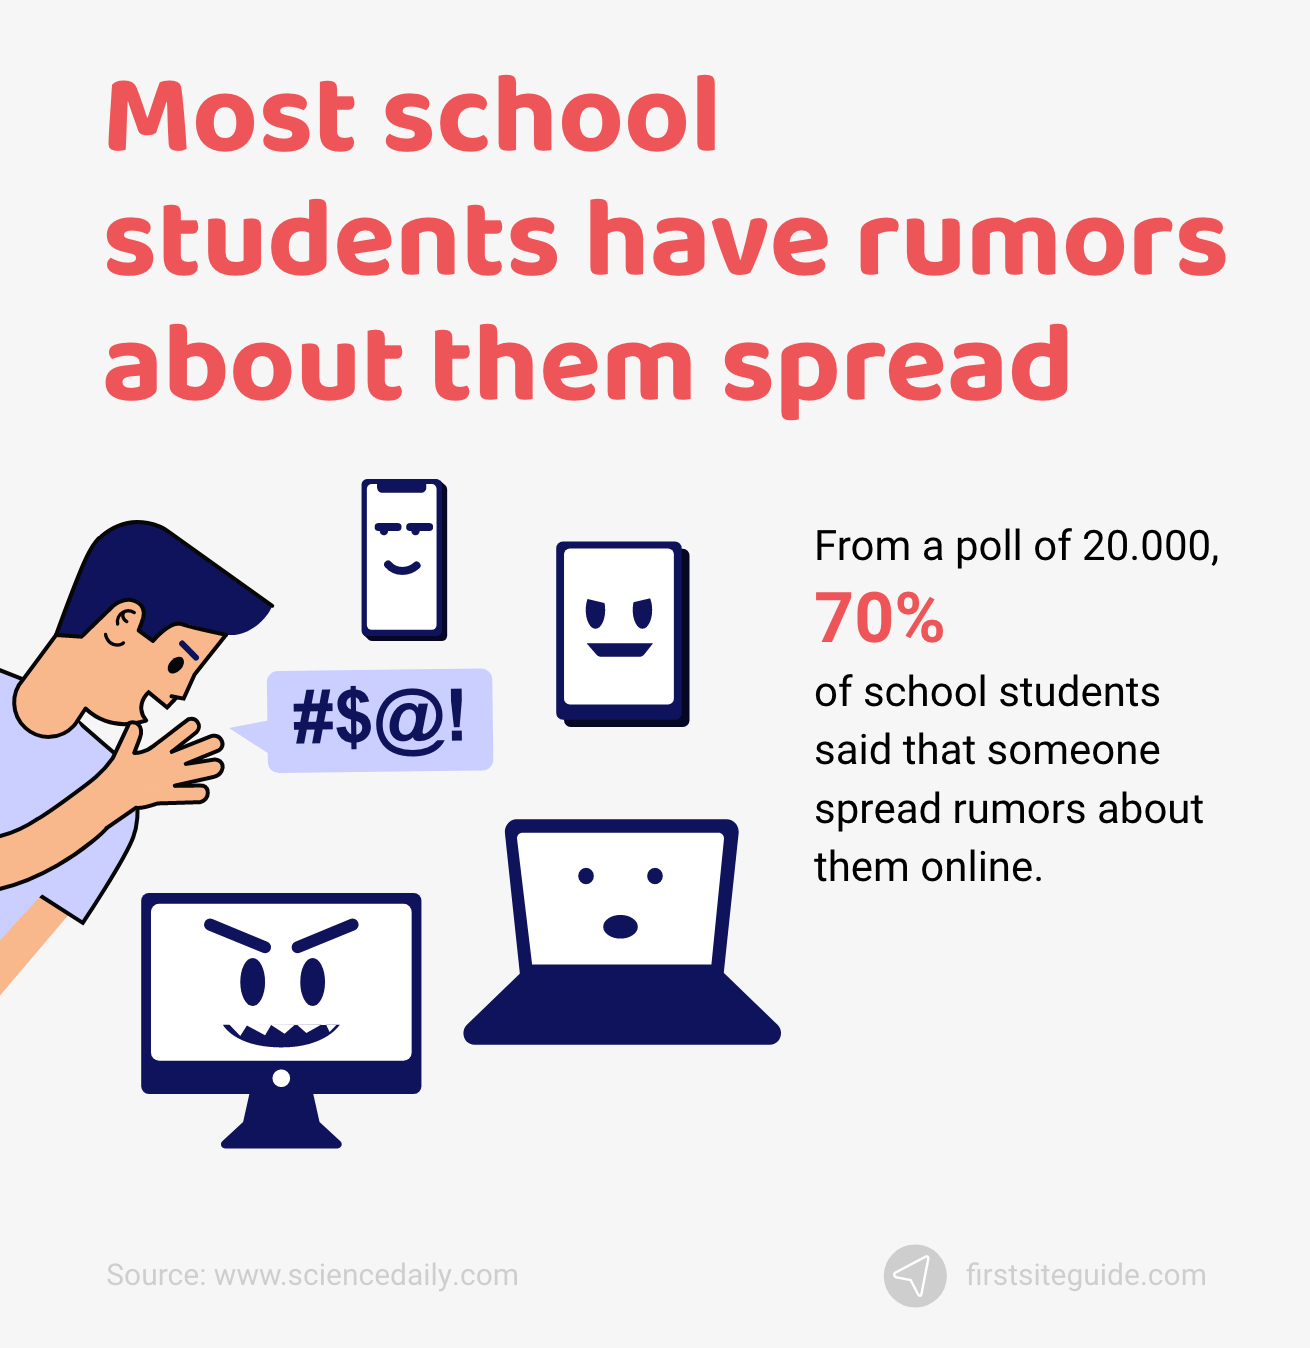 大多数中学生都有关于他们的谣言在网上传播